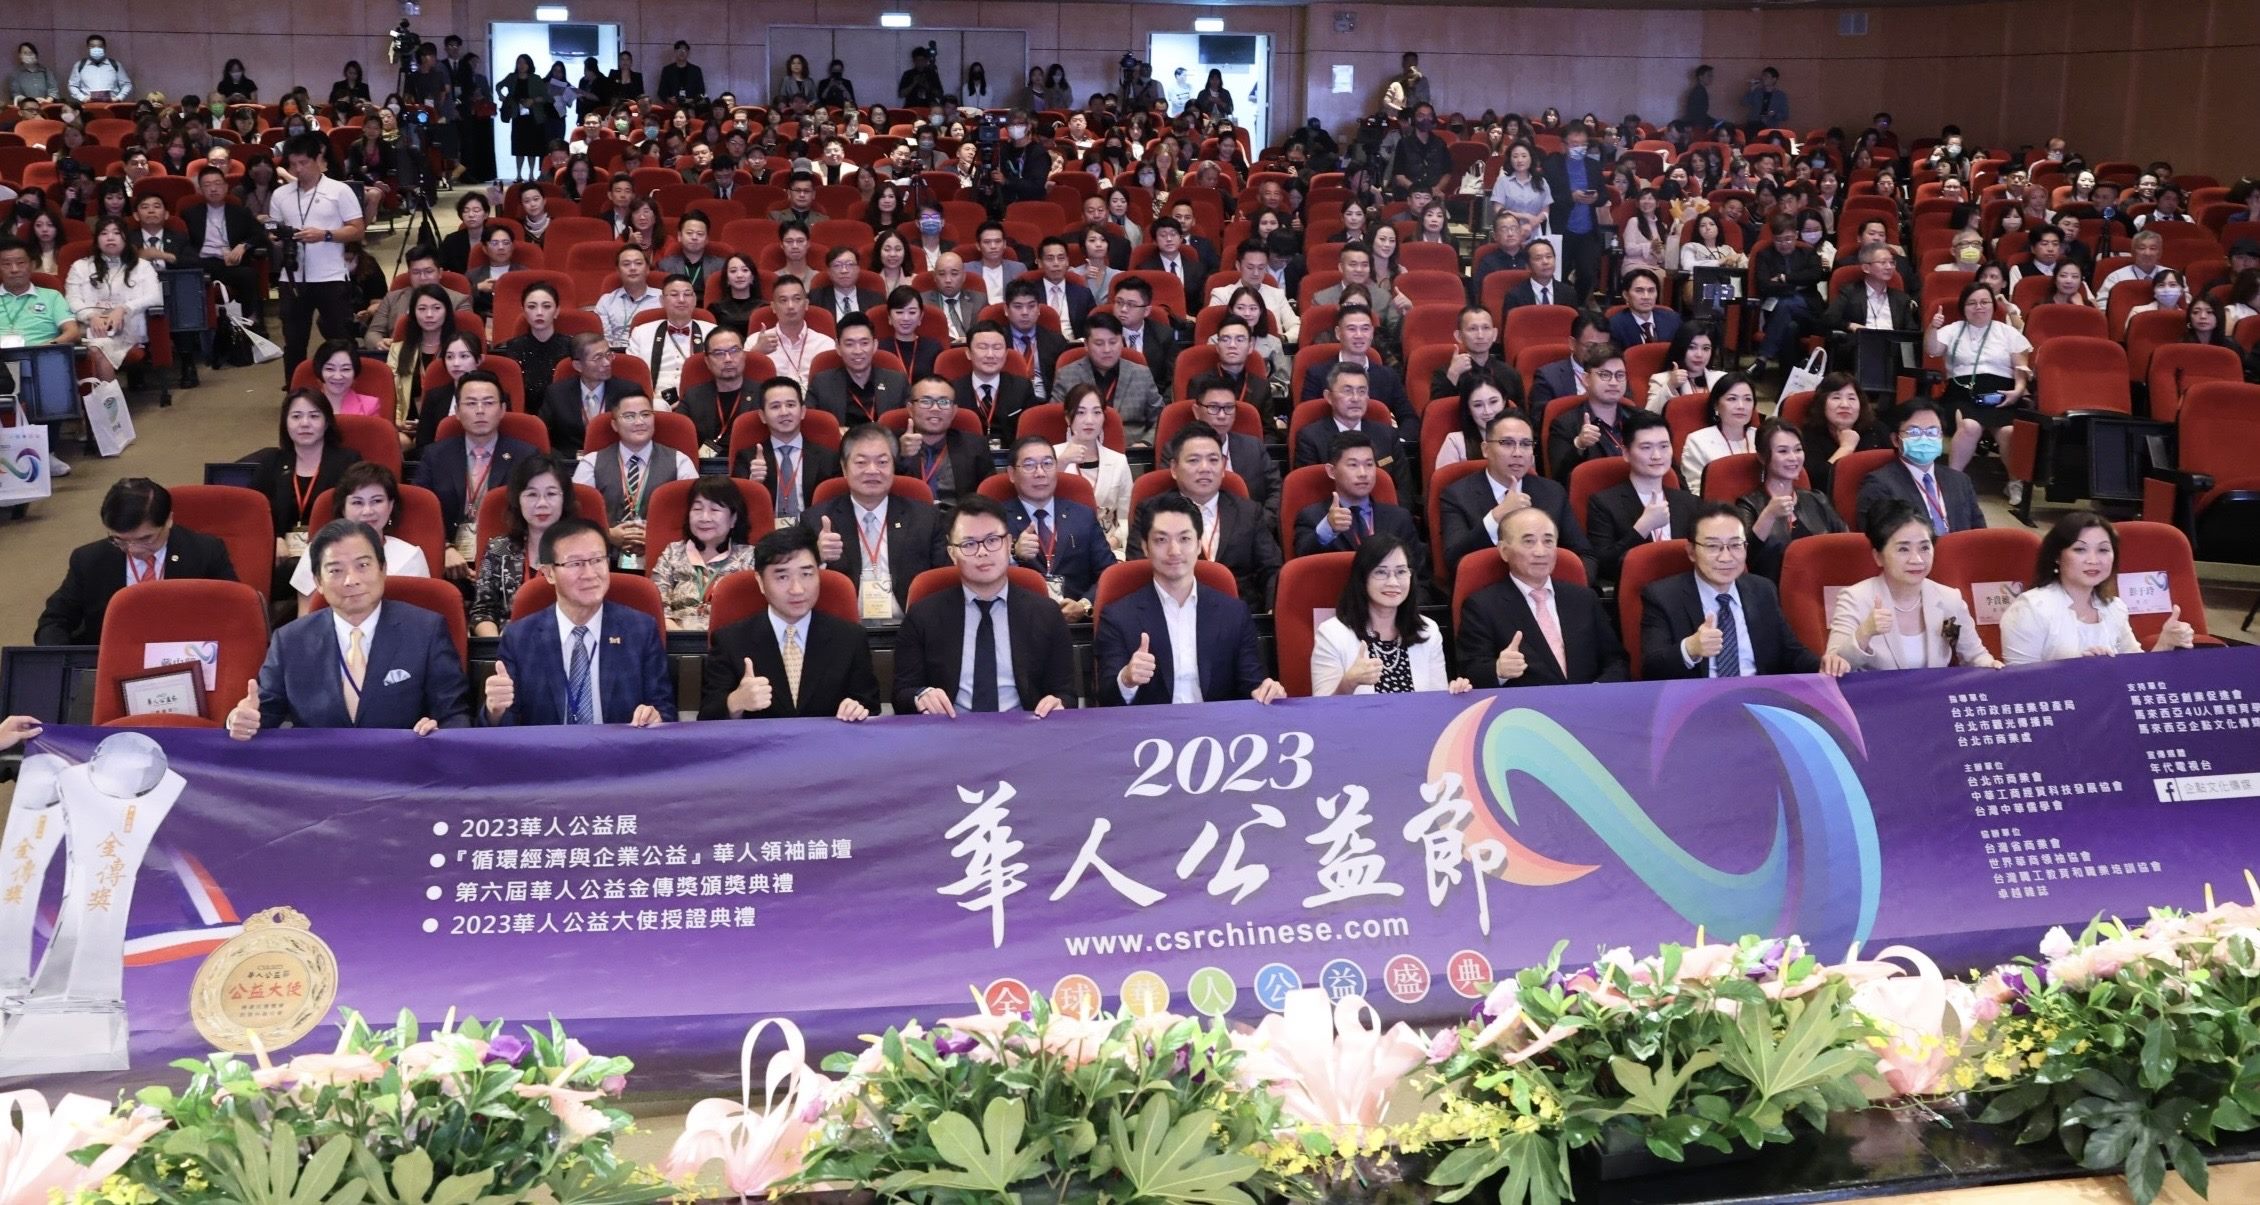 2023華人公益節推廣公益活動